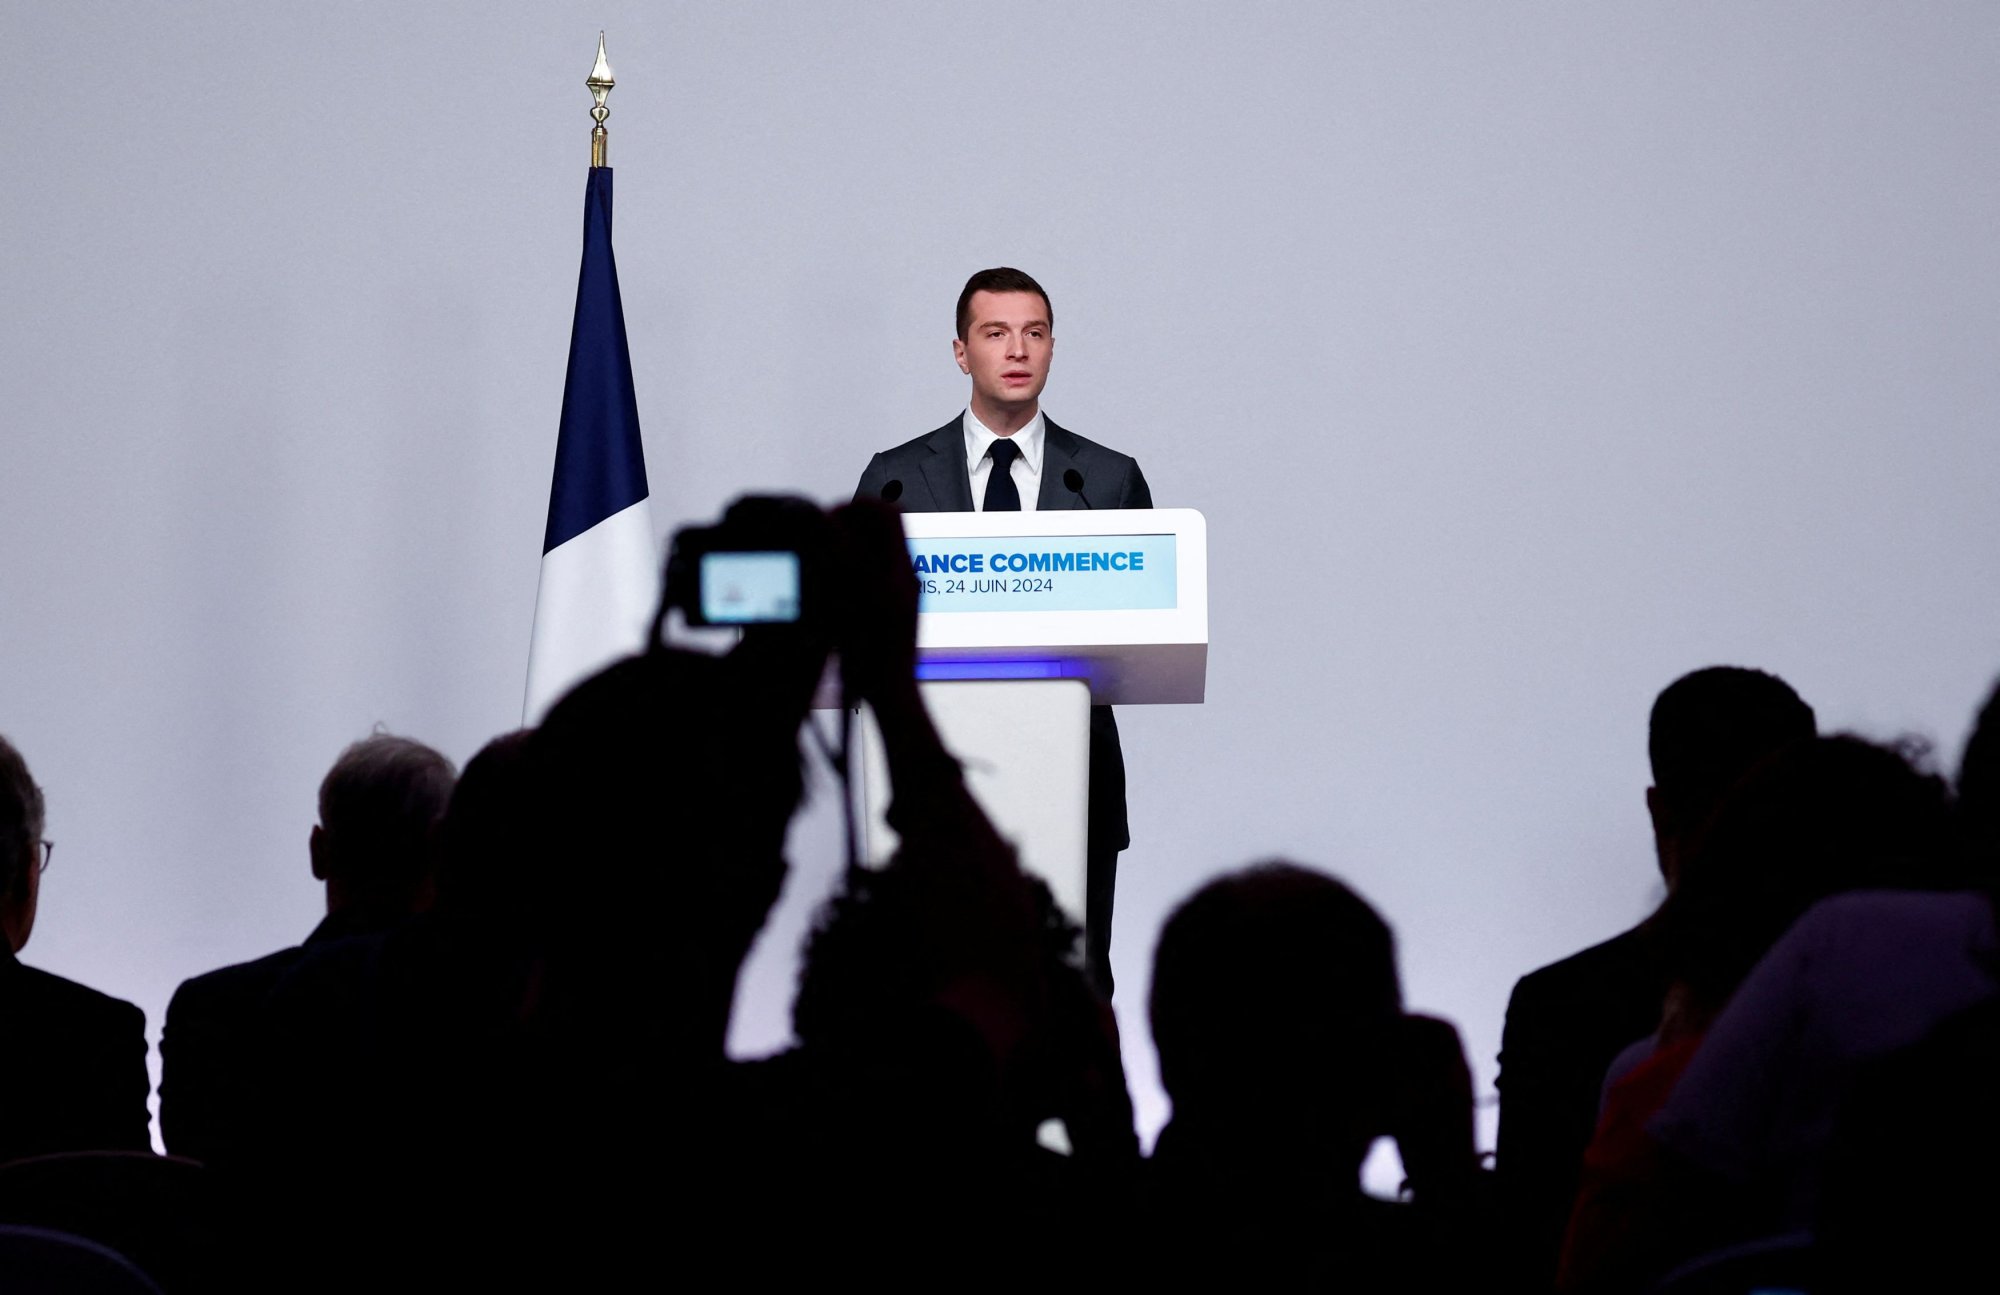 Πρόωρες εκλογές - Γαλλία: Το «όραμά» του για μια ακροδεξιά κυβέρνηση ανέπτυξε ο Μπαρντελά